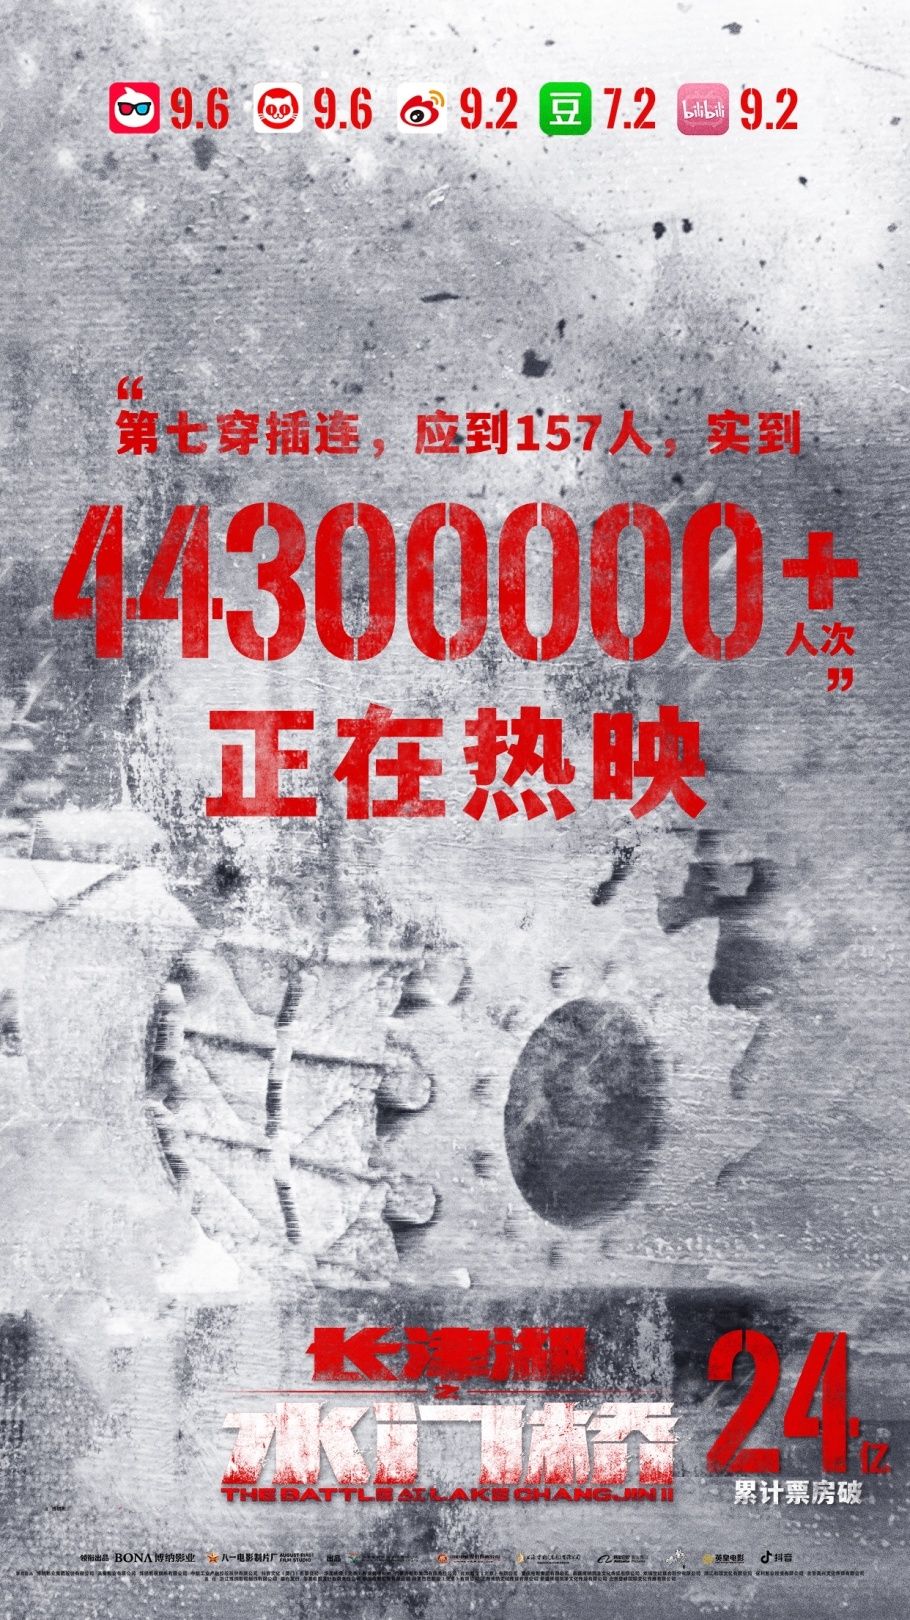 5天24亿，71项纪录，《水门桥》是这个“最贵春节档”第一良心